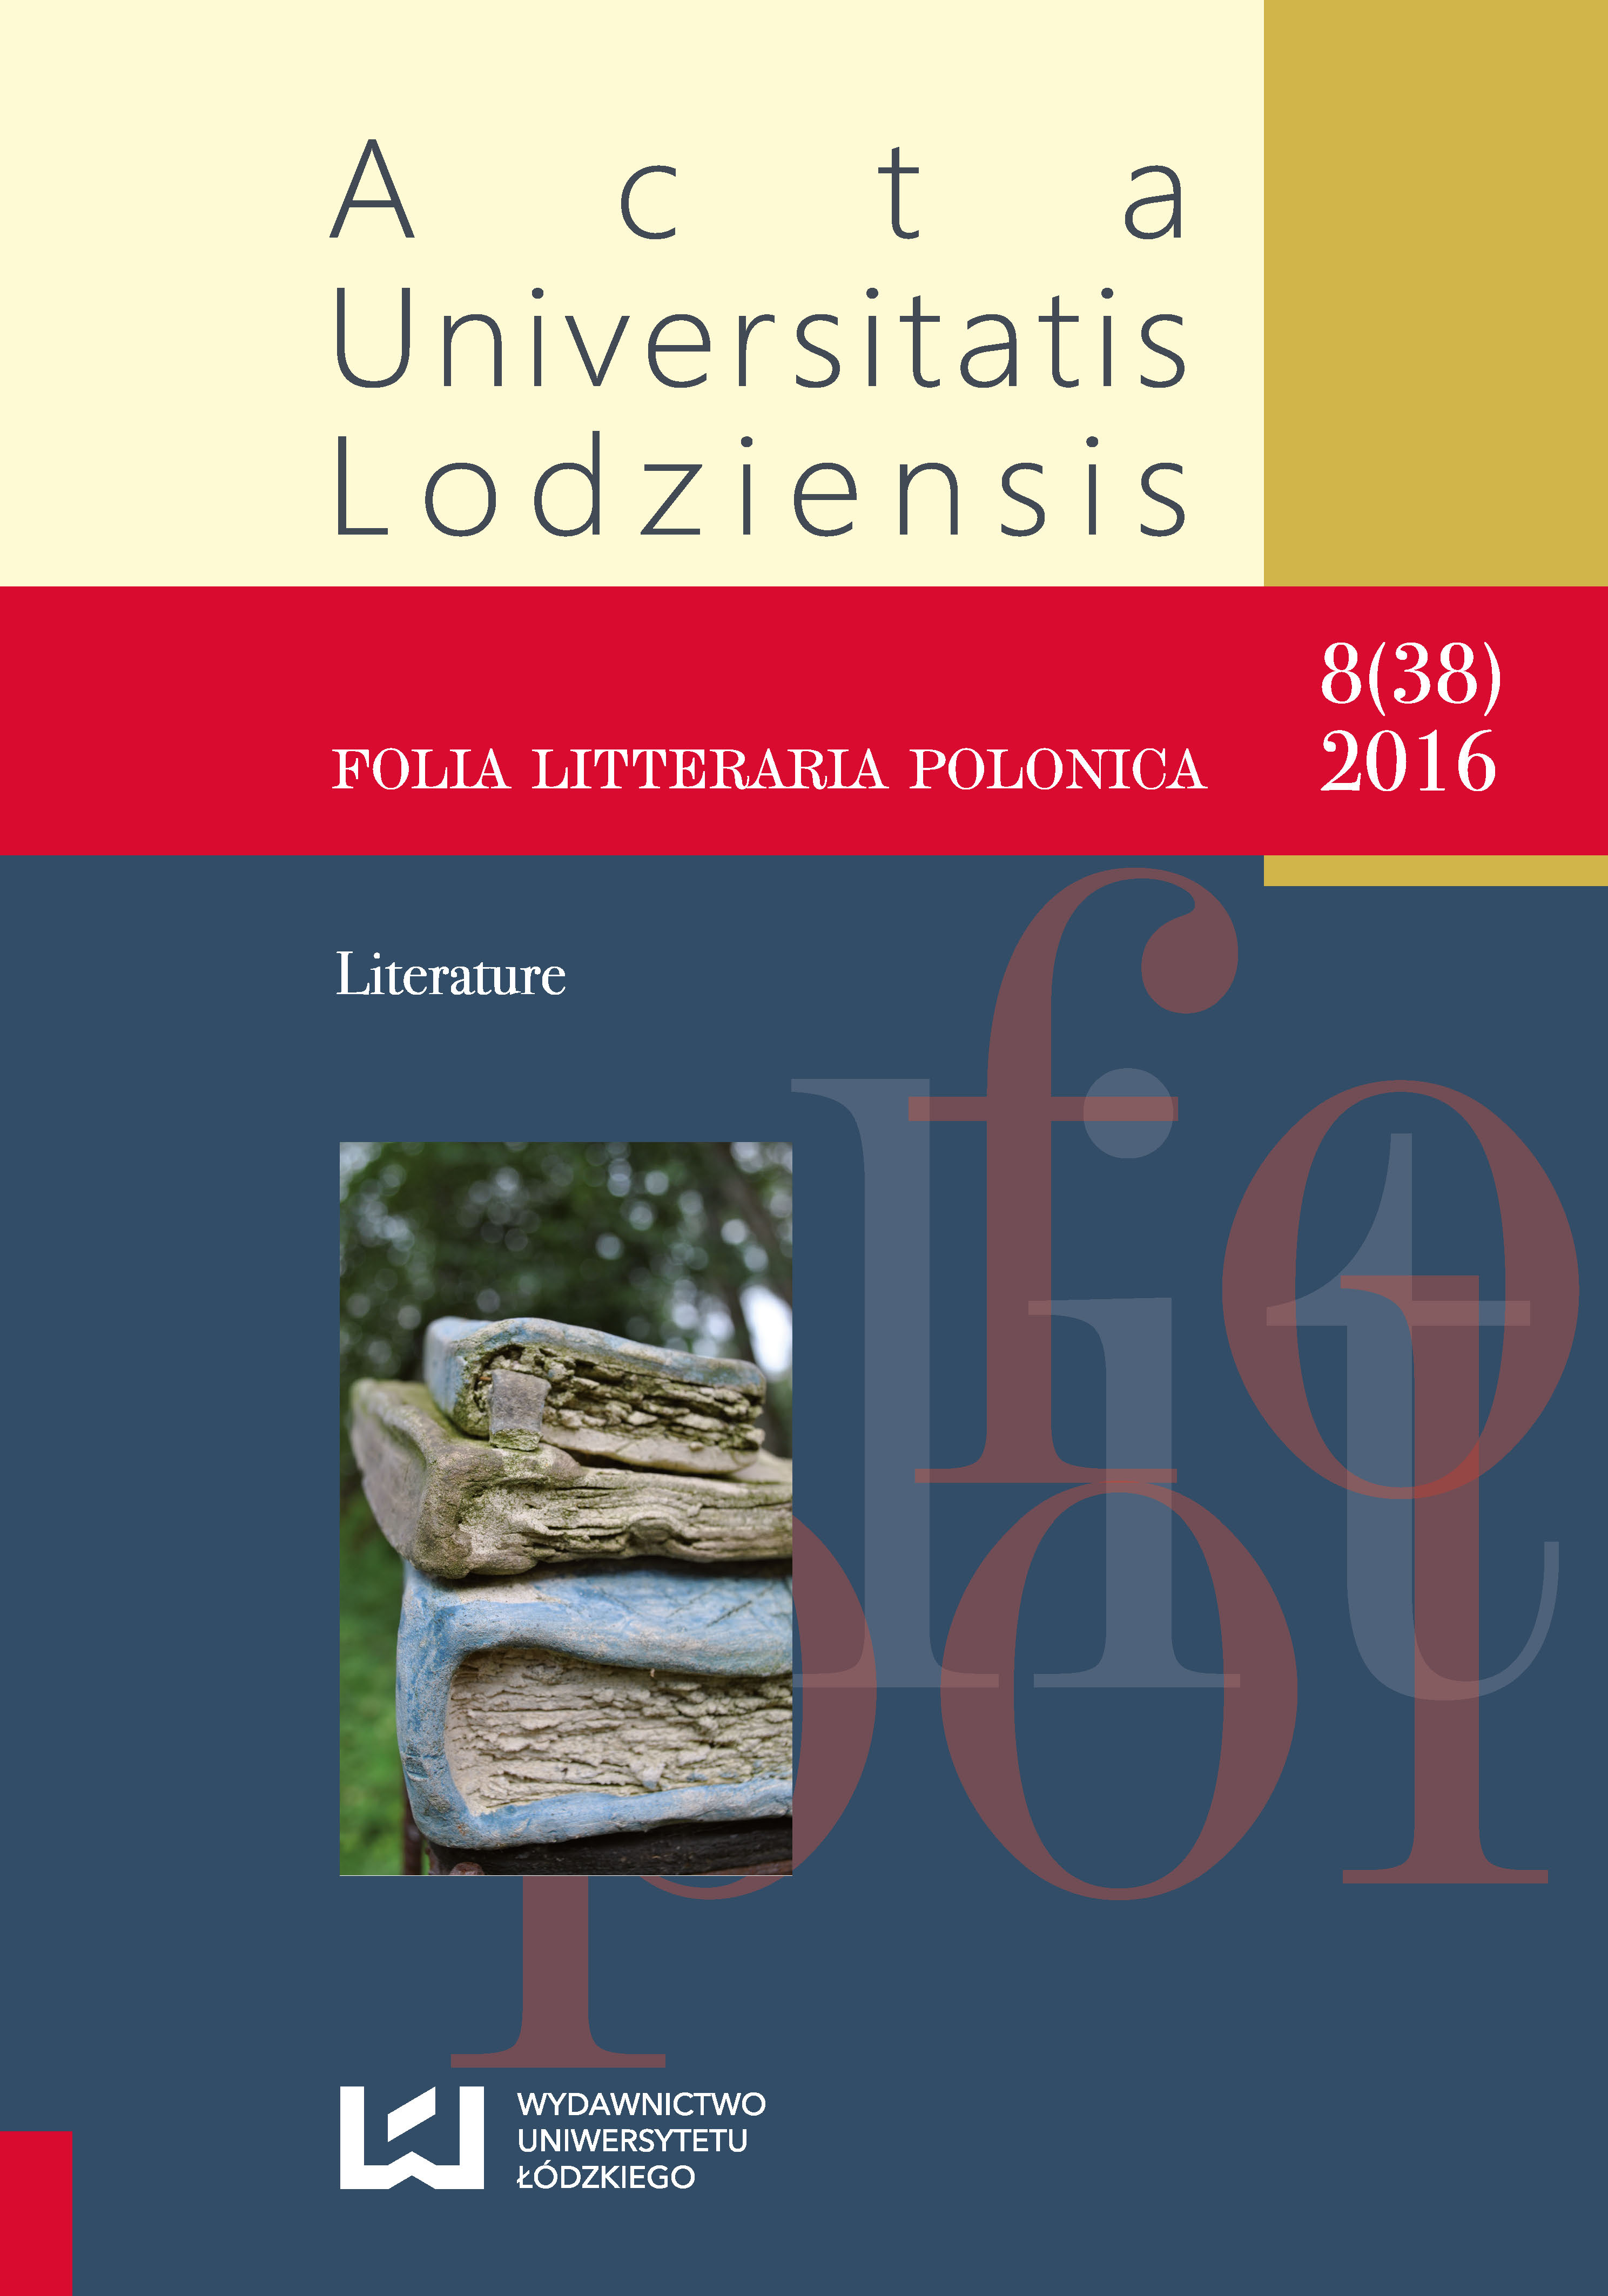 Różewicz and Bonhoeffer. On the Margin of the Poem Learning to Walk by Tadeusz Różewicz Cover Image